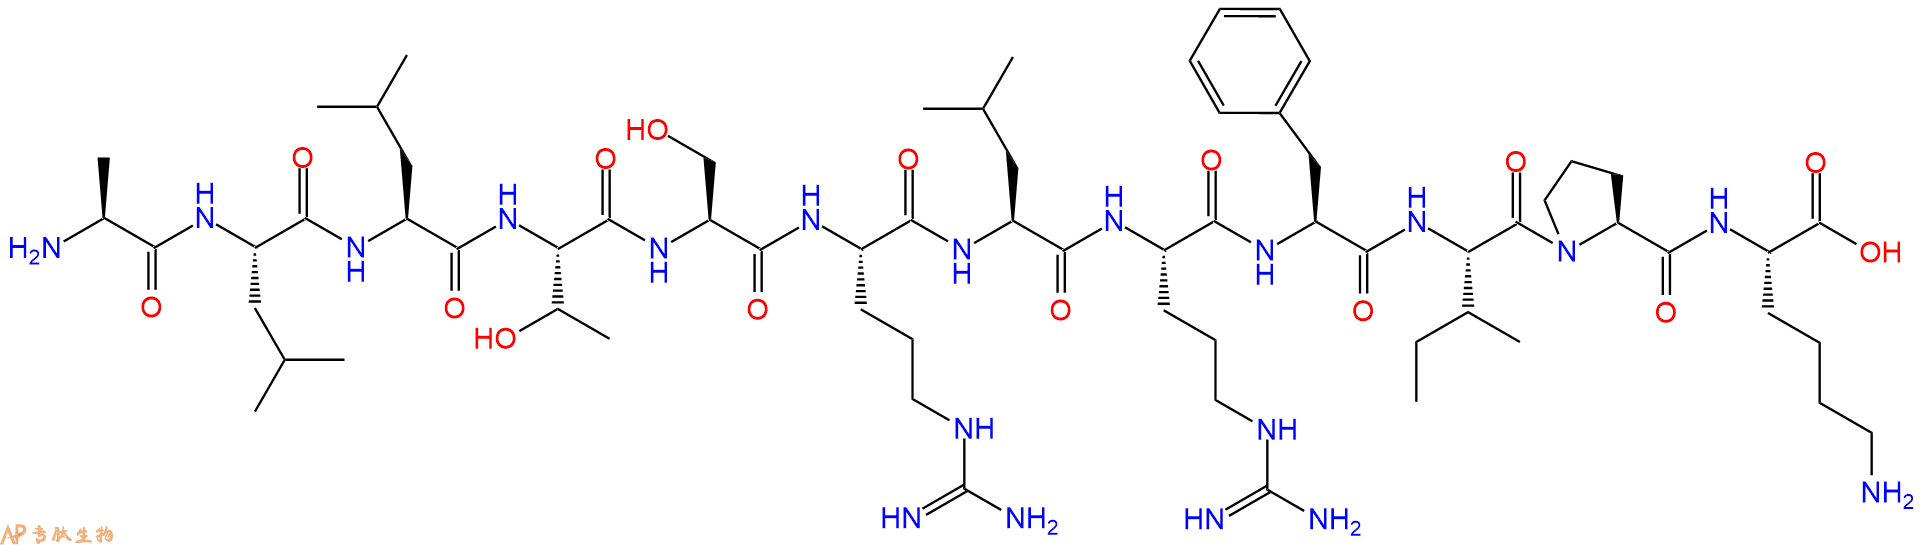 专肽生物产品H2N-Ala-Leu-Leu-Thr-Ser-Arg-Leu-Arg-Phe-Ile-Pro-Ly